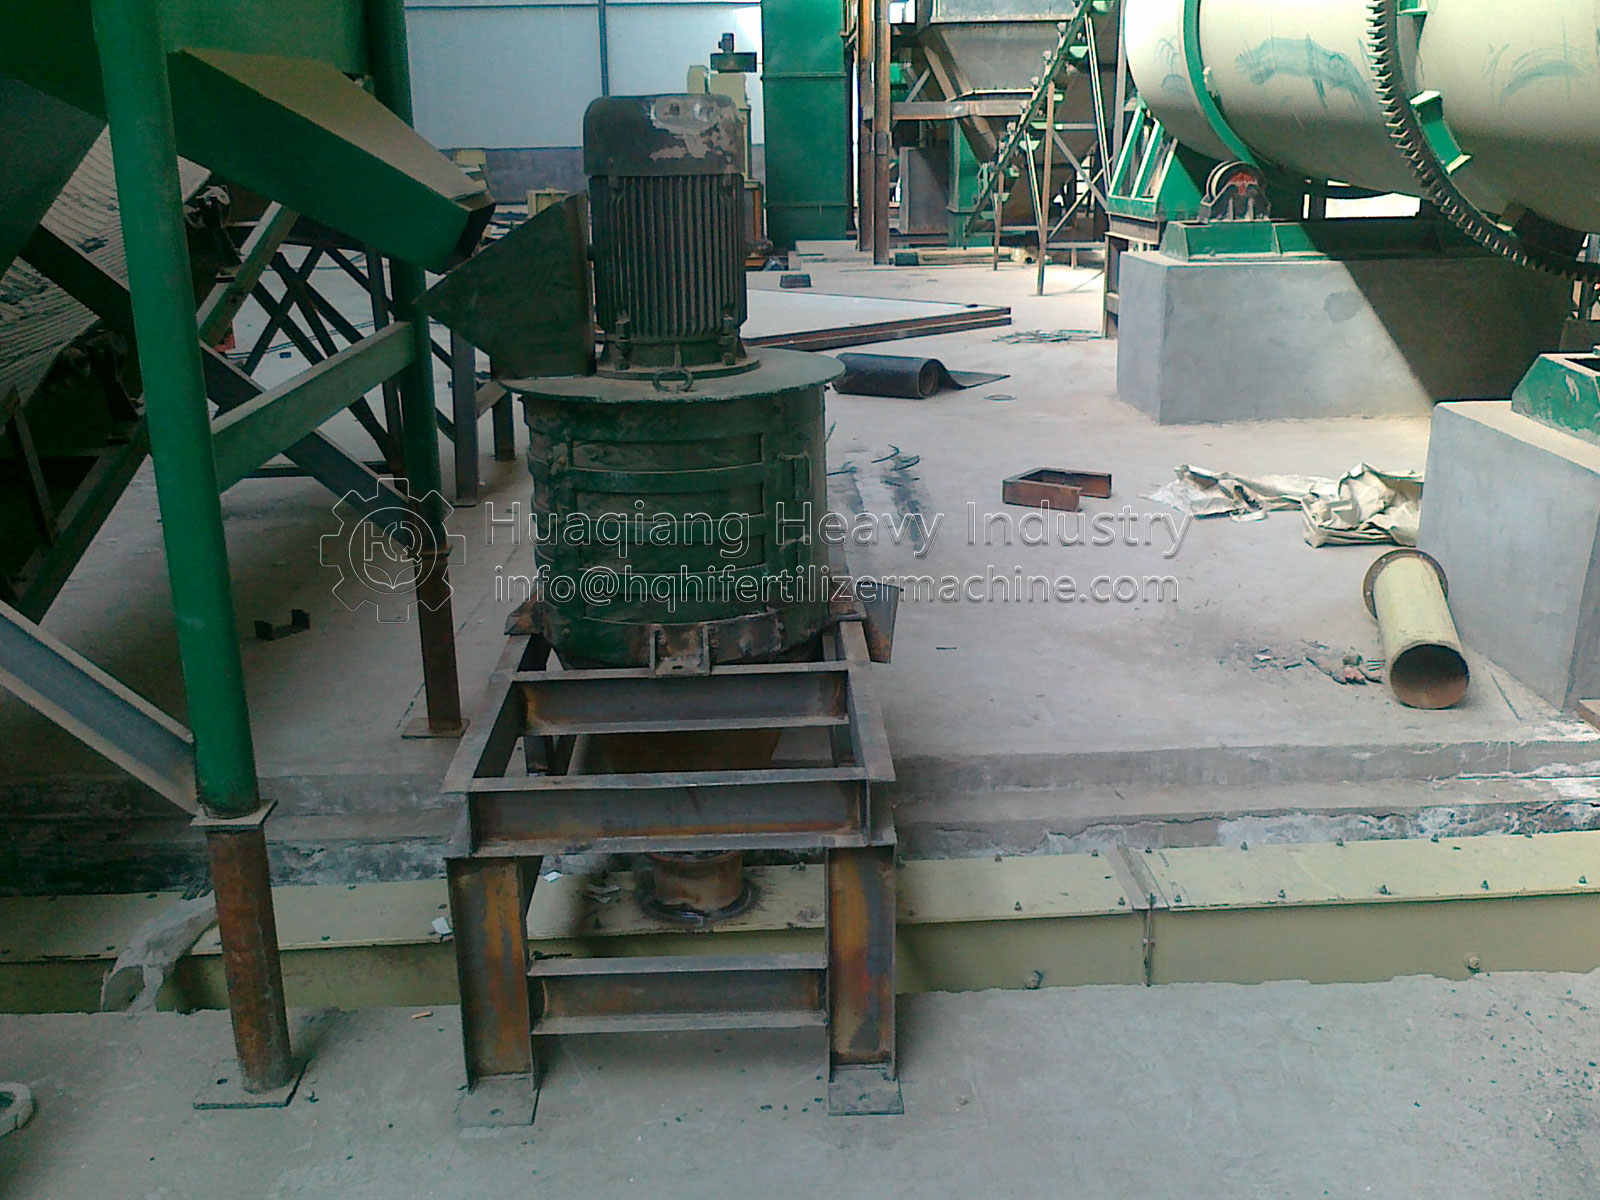 fertilizer manufacturing process disc fertilizer granulator